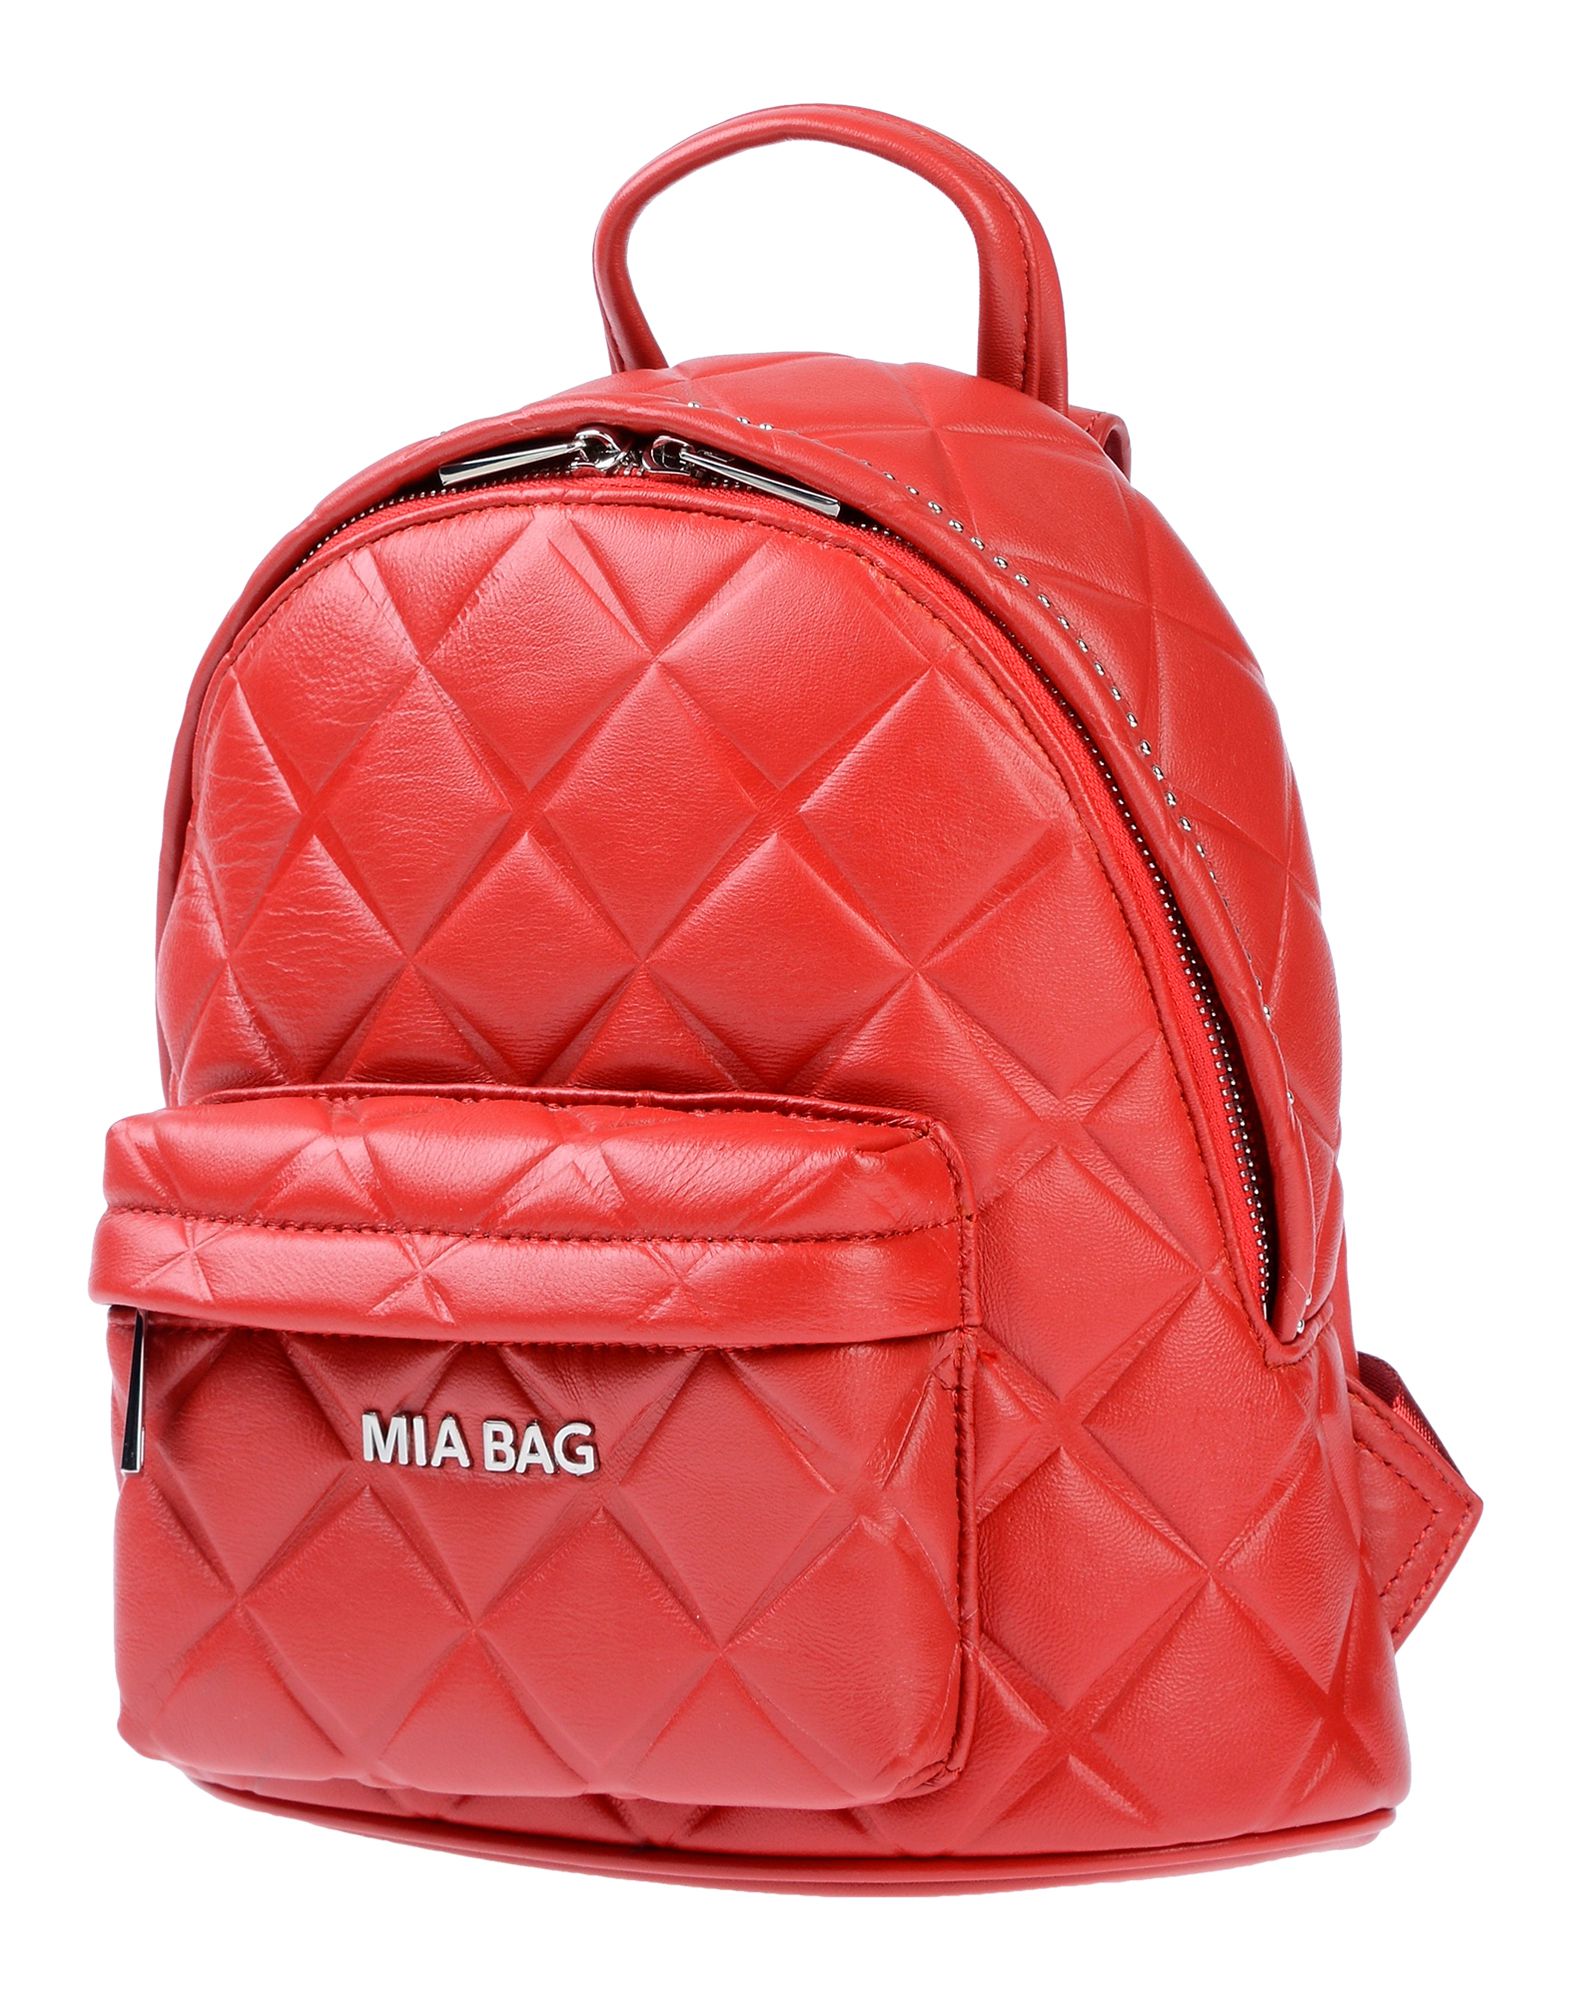 MIA BAG Backpack & fanny pack,45459555UJ 1